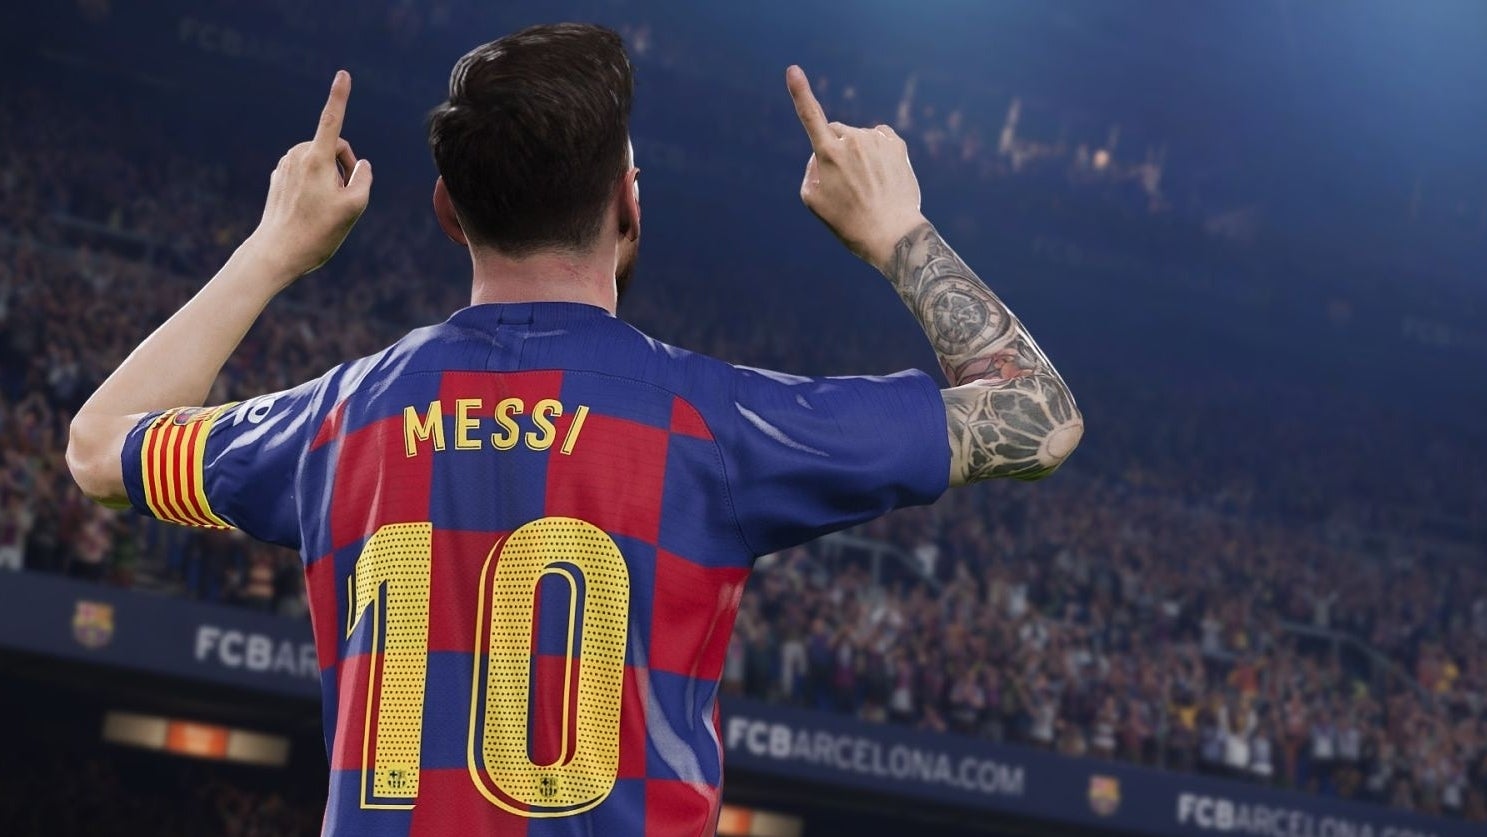 Obrazki dla FC Barcelona nie wzięła udziału w charytatywnym turnieju FIFA 20 przez umowę z wydawcą PES